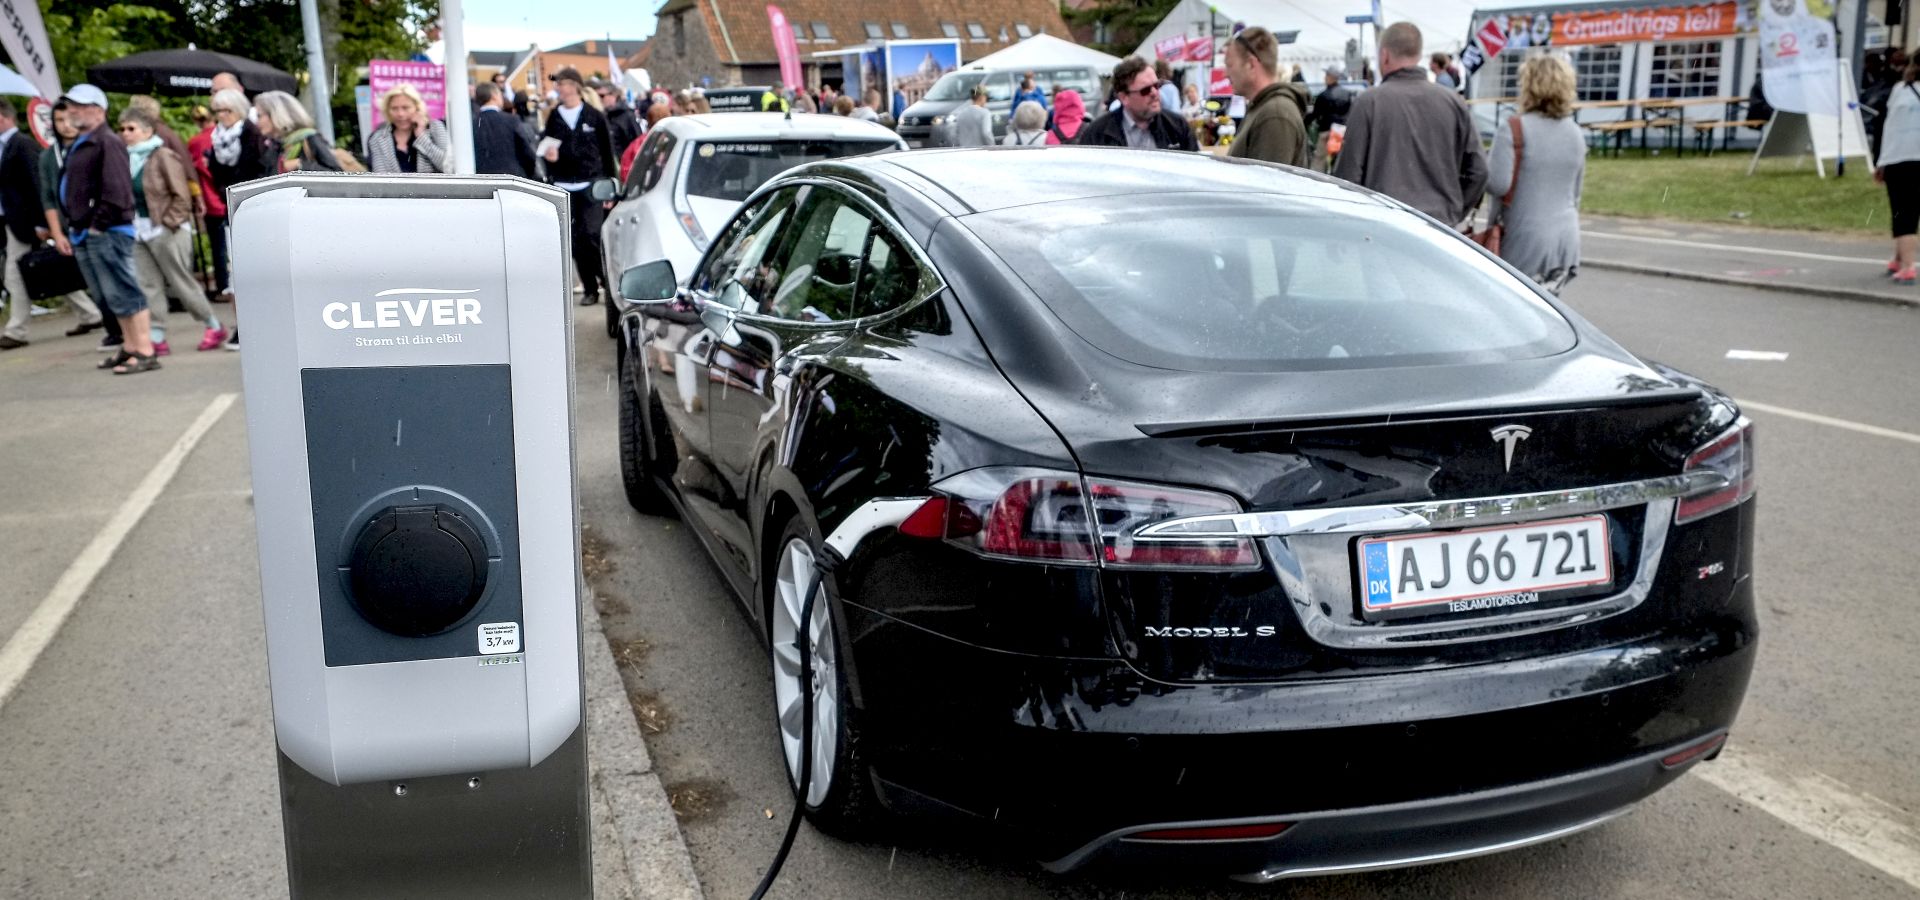 Black model S Tesla charging in a street in Denmark